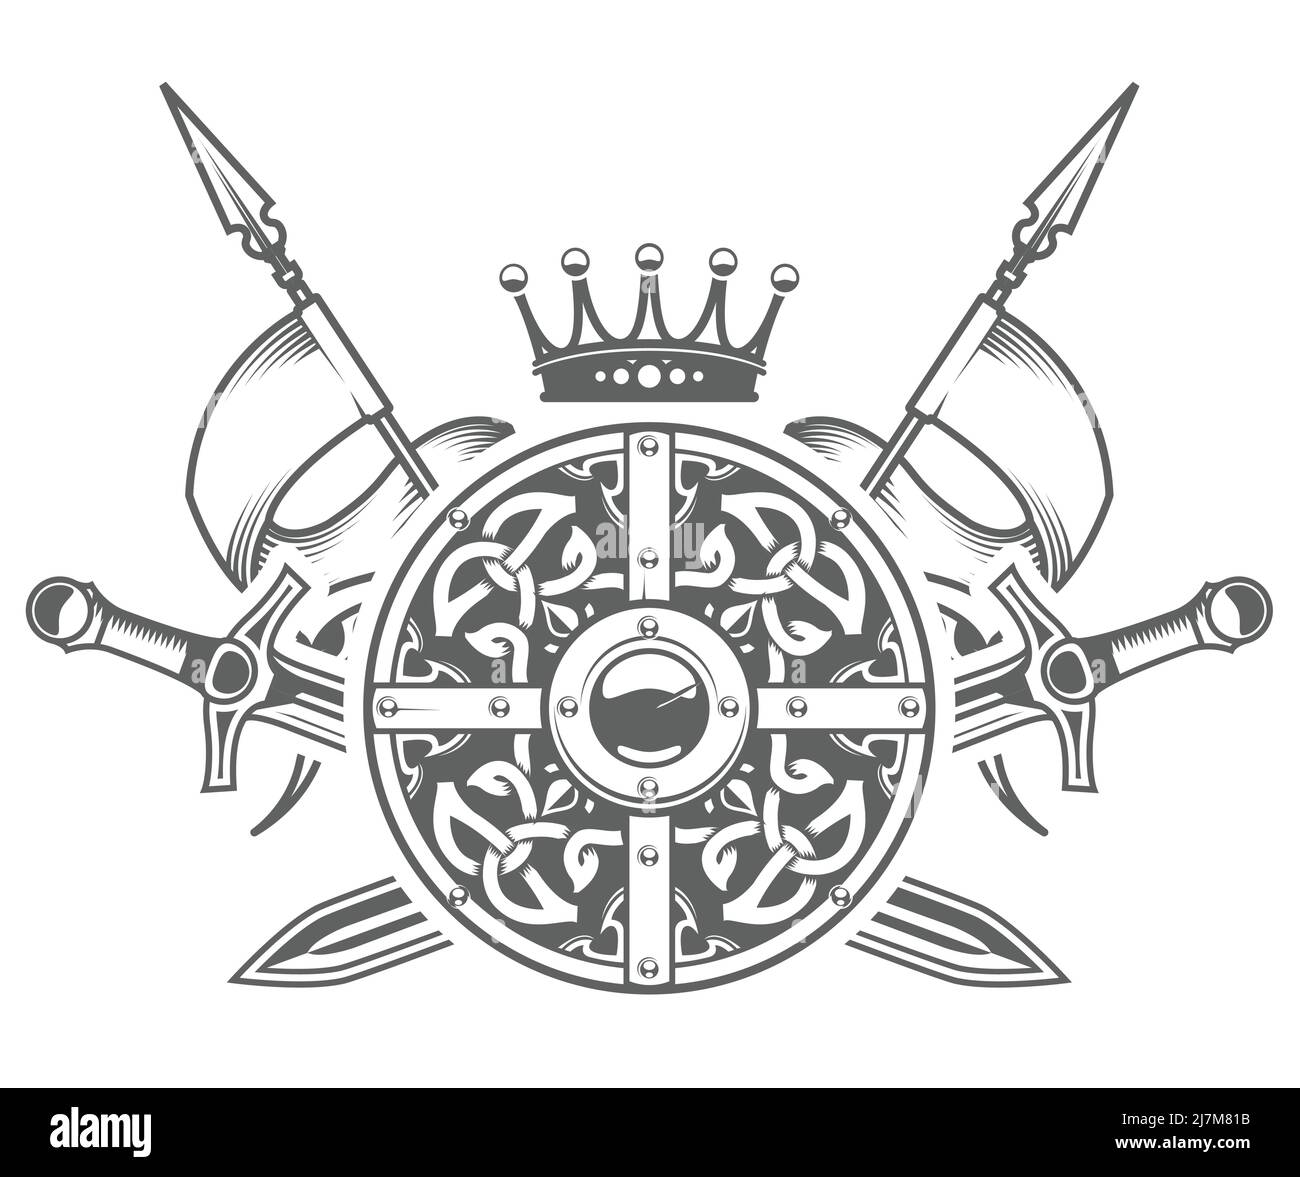 Armure de chevalier médiéval, bouclier rond avec motif décoratif, couronne avec épées et fanions croisés, blason médiéval et blason héraldique, vecteur Illustration de Vecteur